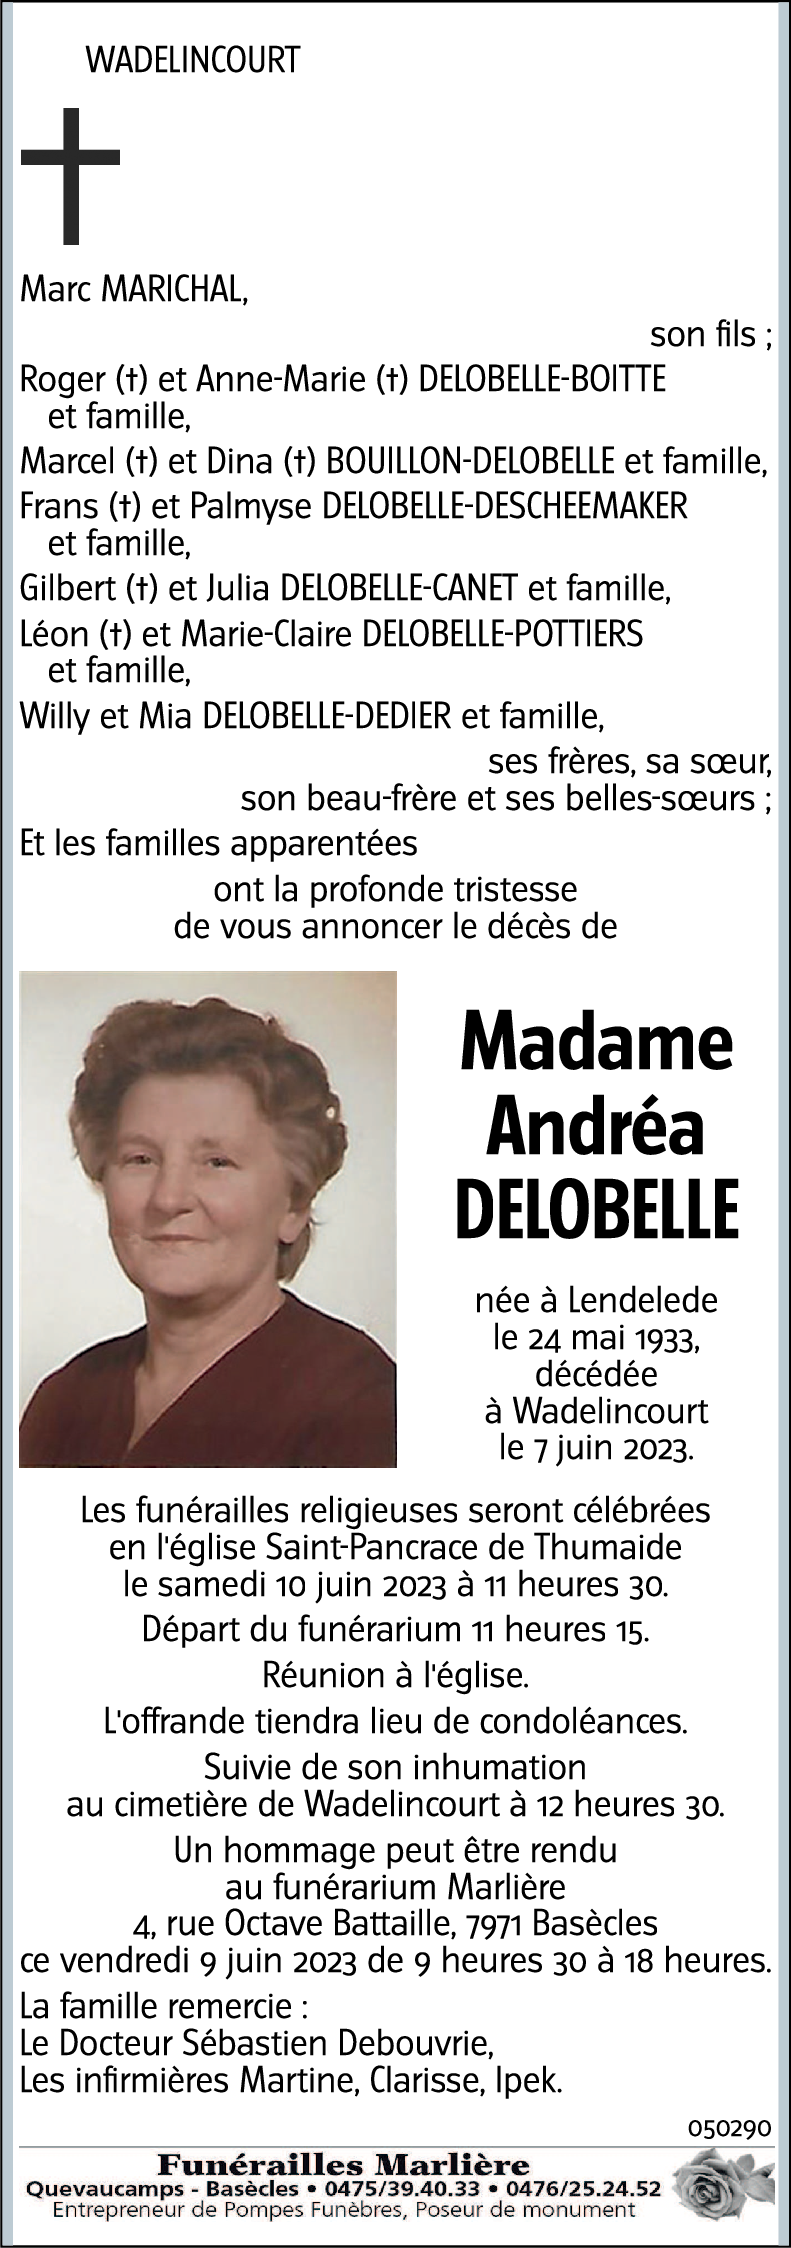 Andréa Delobelle